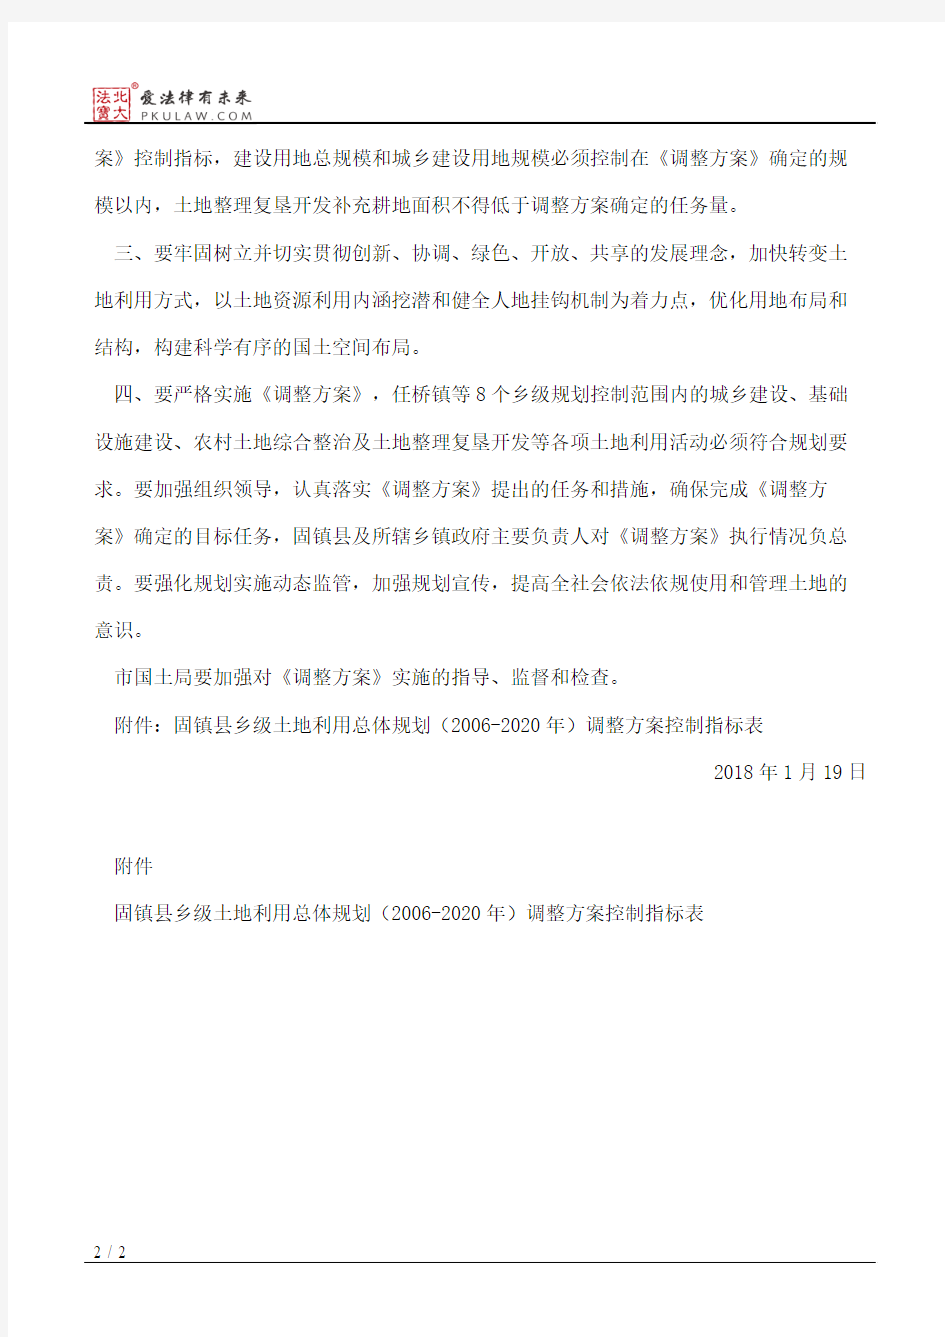 蚌埠市人民政府关于固镇县任桥镇等8个乡镇乡级土地利用总体规划(2